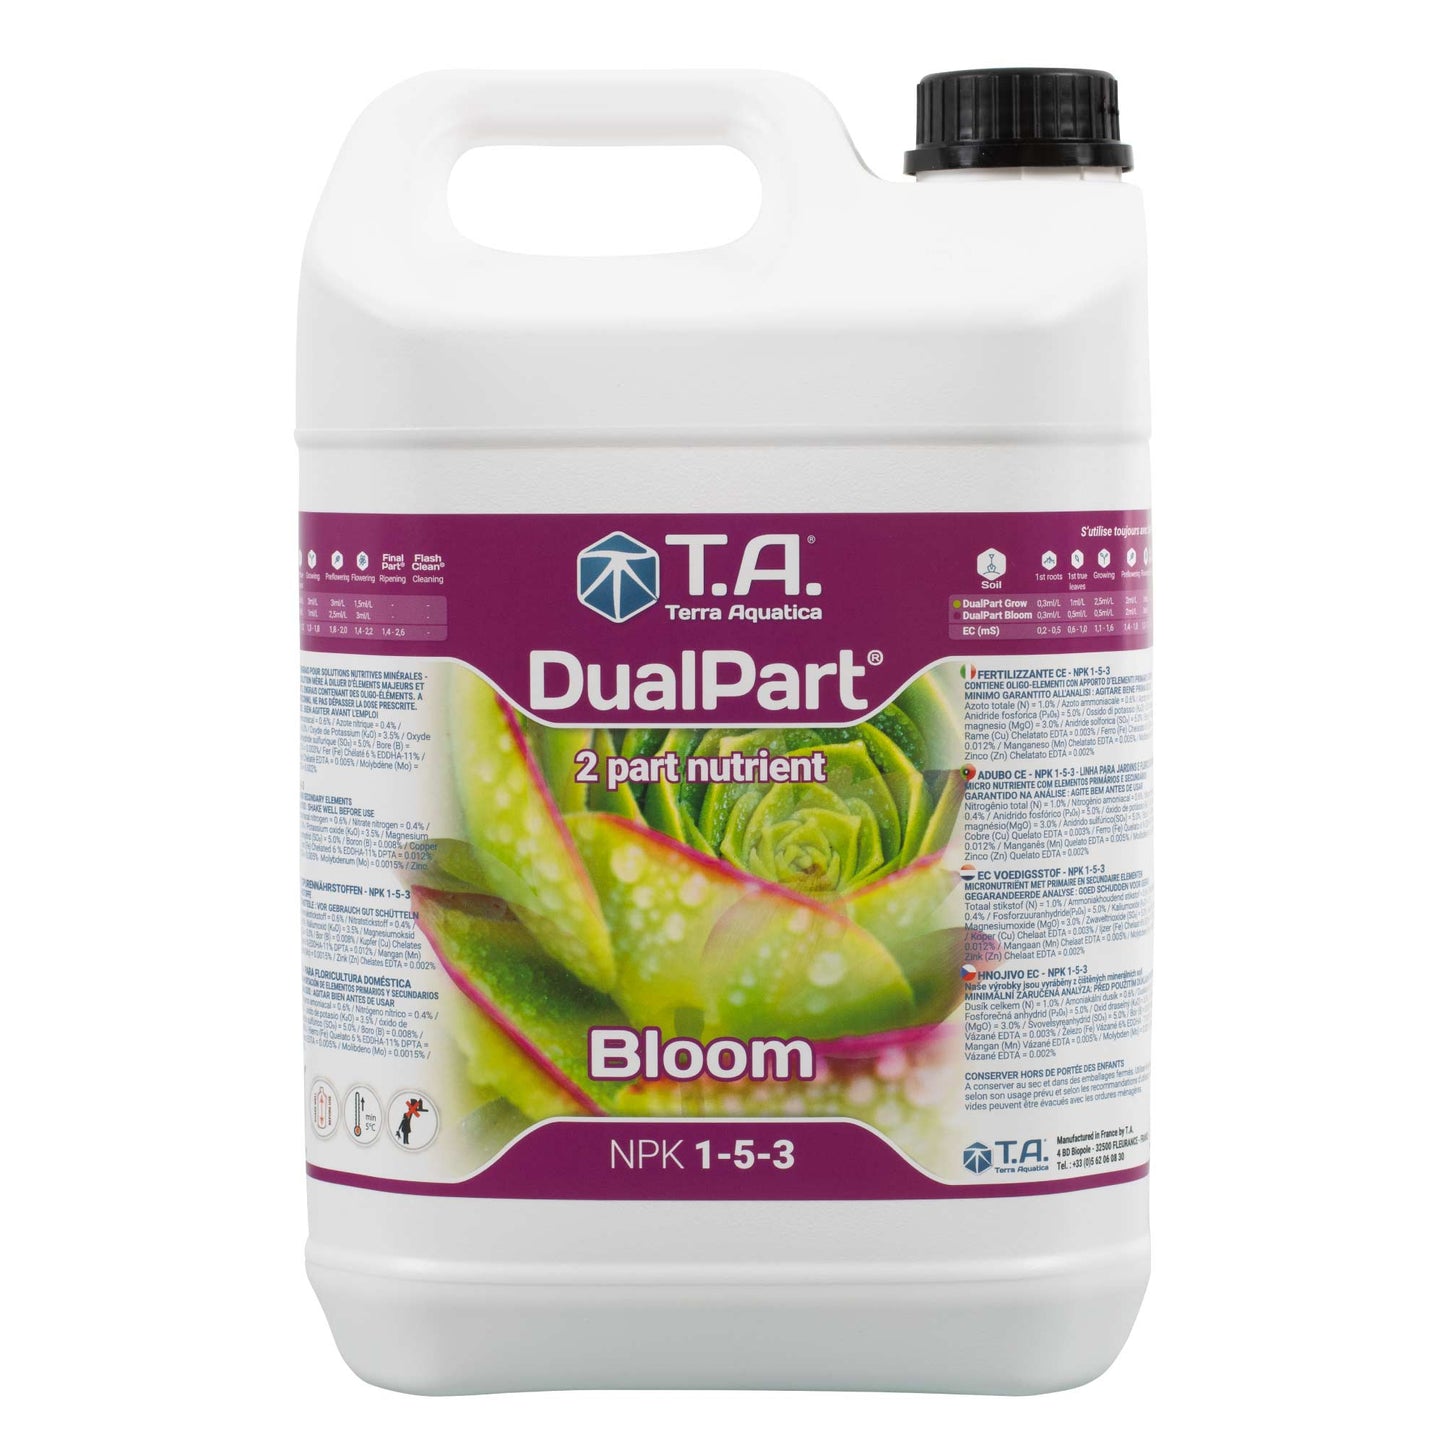 T.A. DualPart Bloom デュアルパート ブルーム（2パートベース肥料）